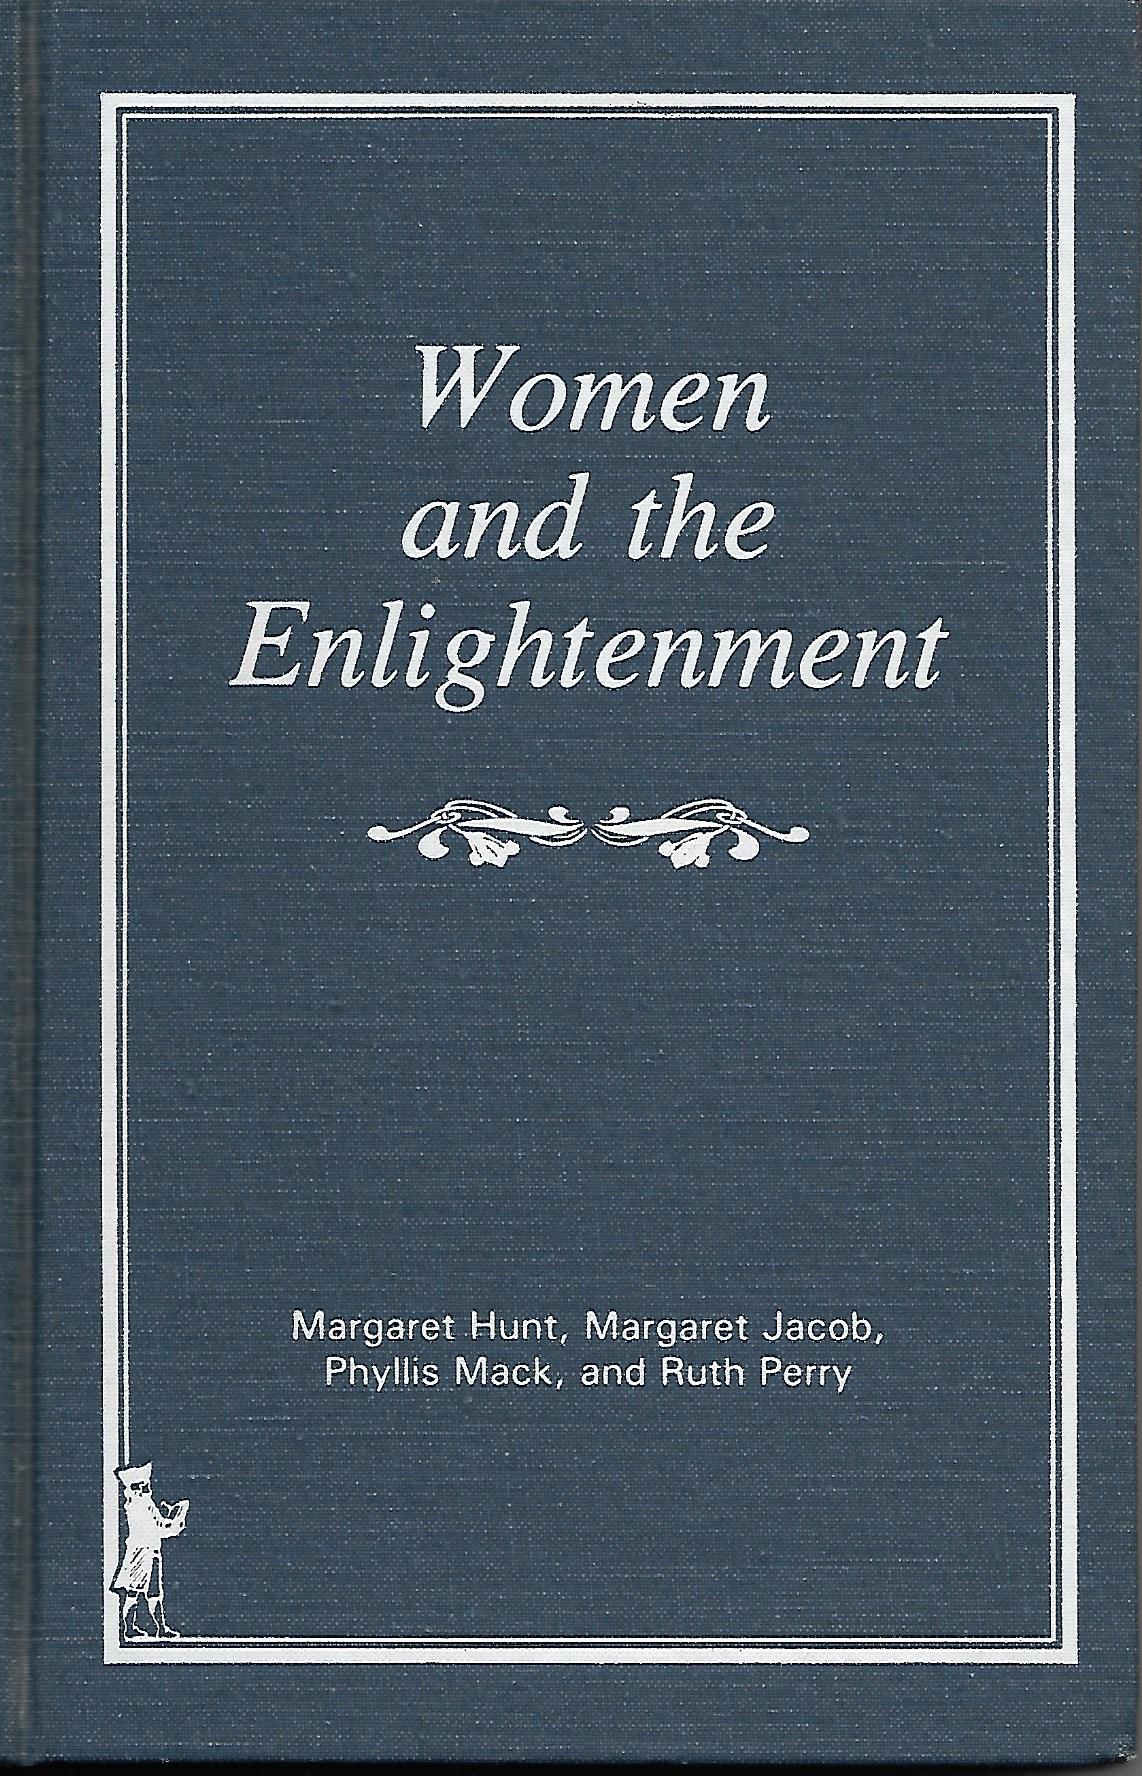 Women of the Enlightenment